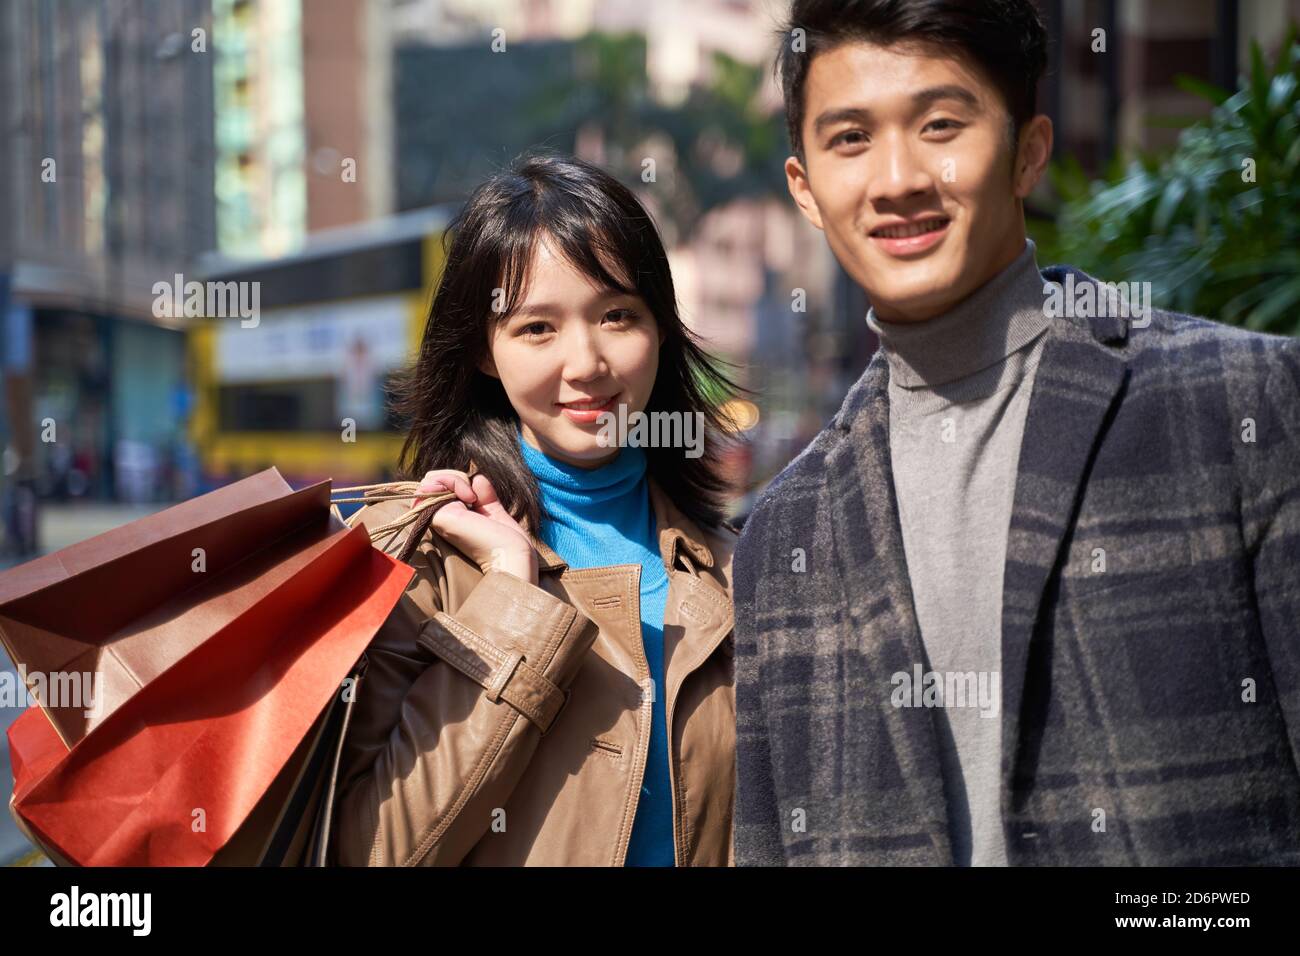 Außenportrait eines jungen liebenden asiatischen Paares mit Shopping Beutel in der Hand Stockfoto